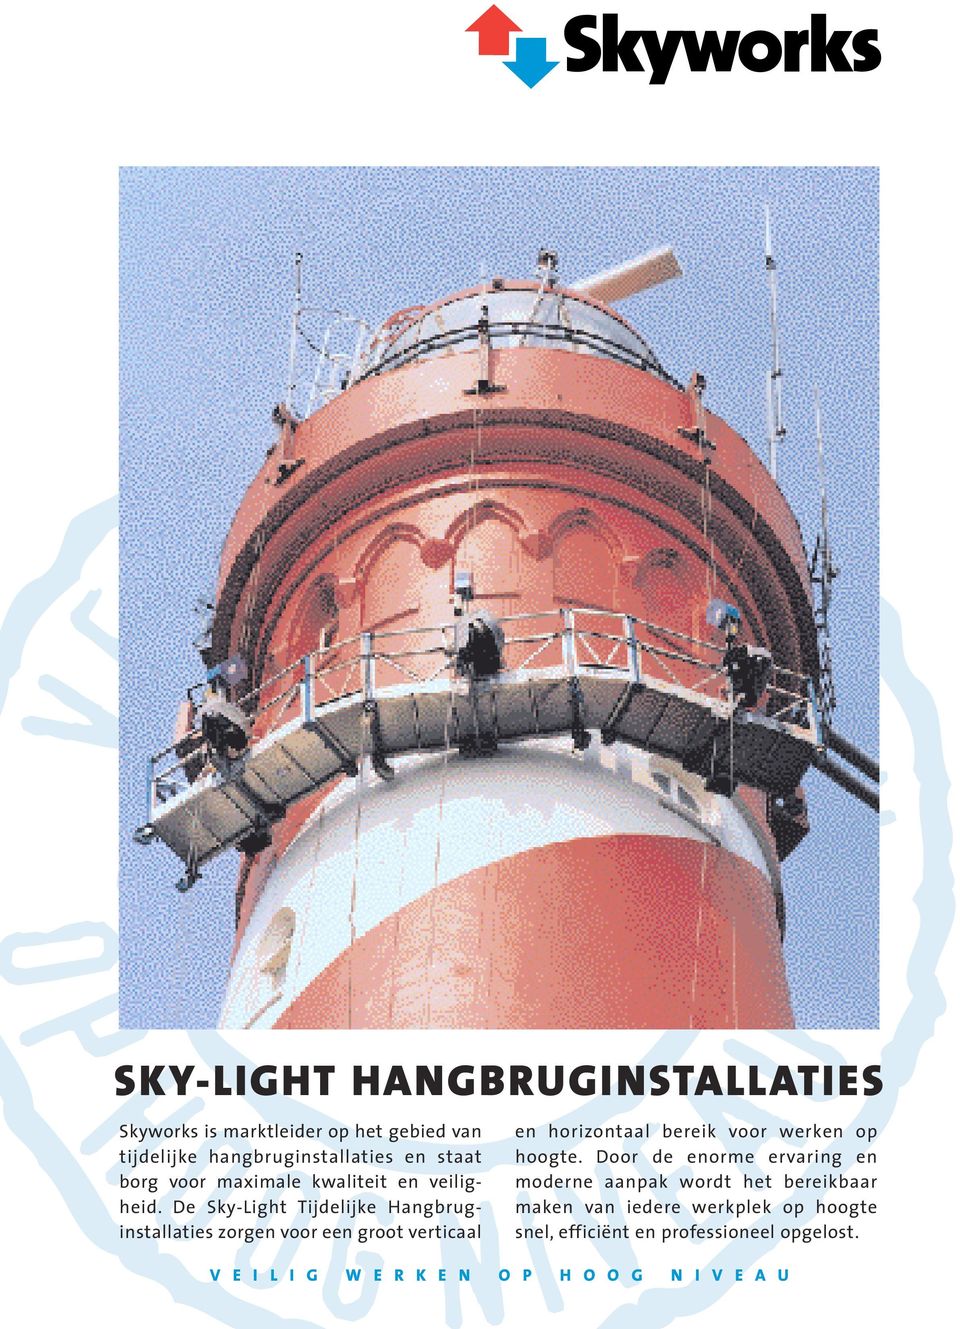 De Sky-Light Tijdelijke Hangbruginstallaties zorgen voor een groot verticaal en horizontaal bereik voor werken op